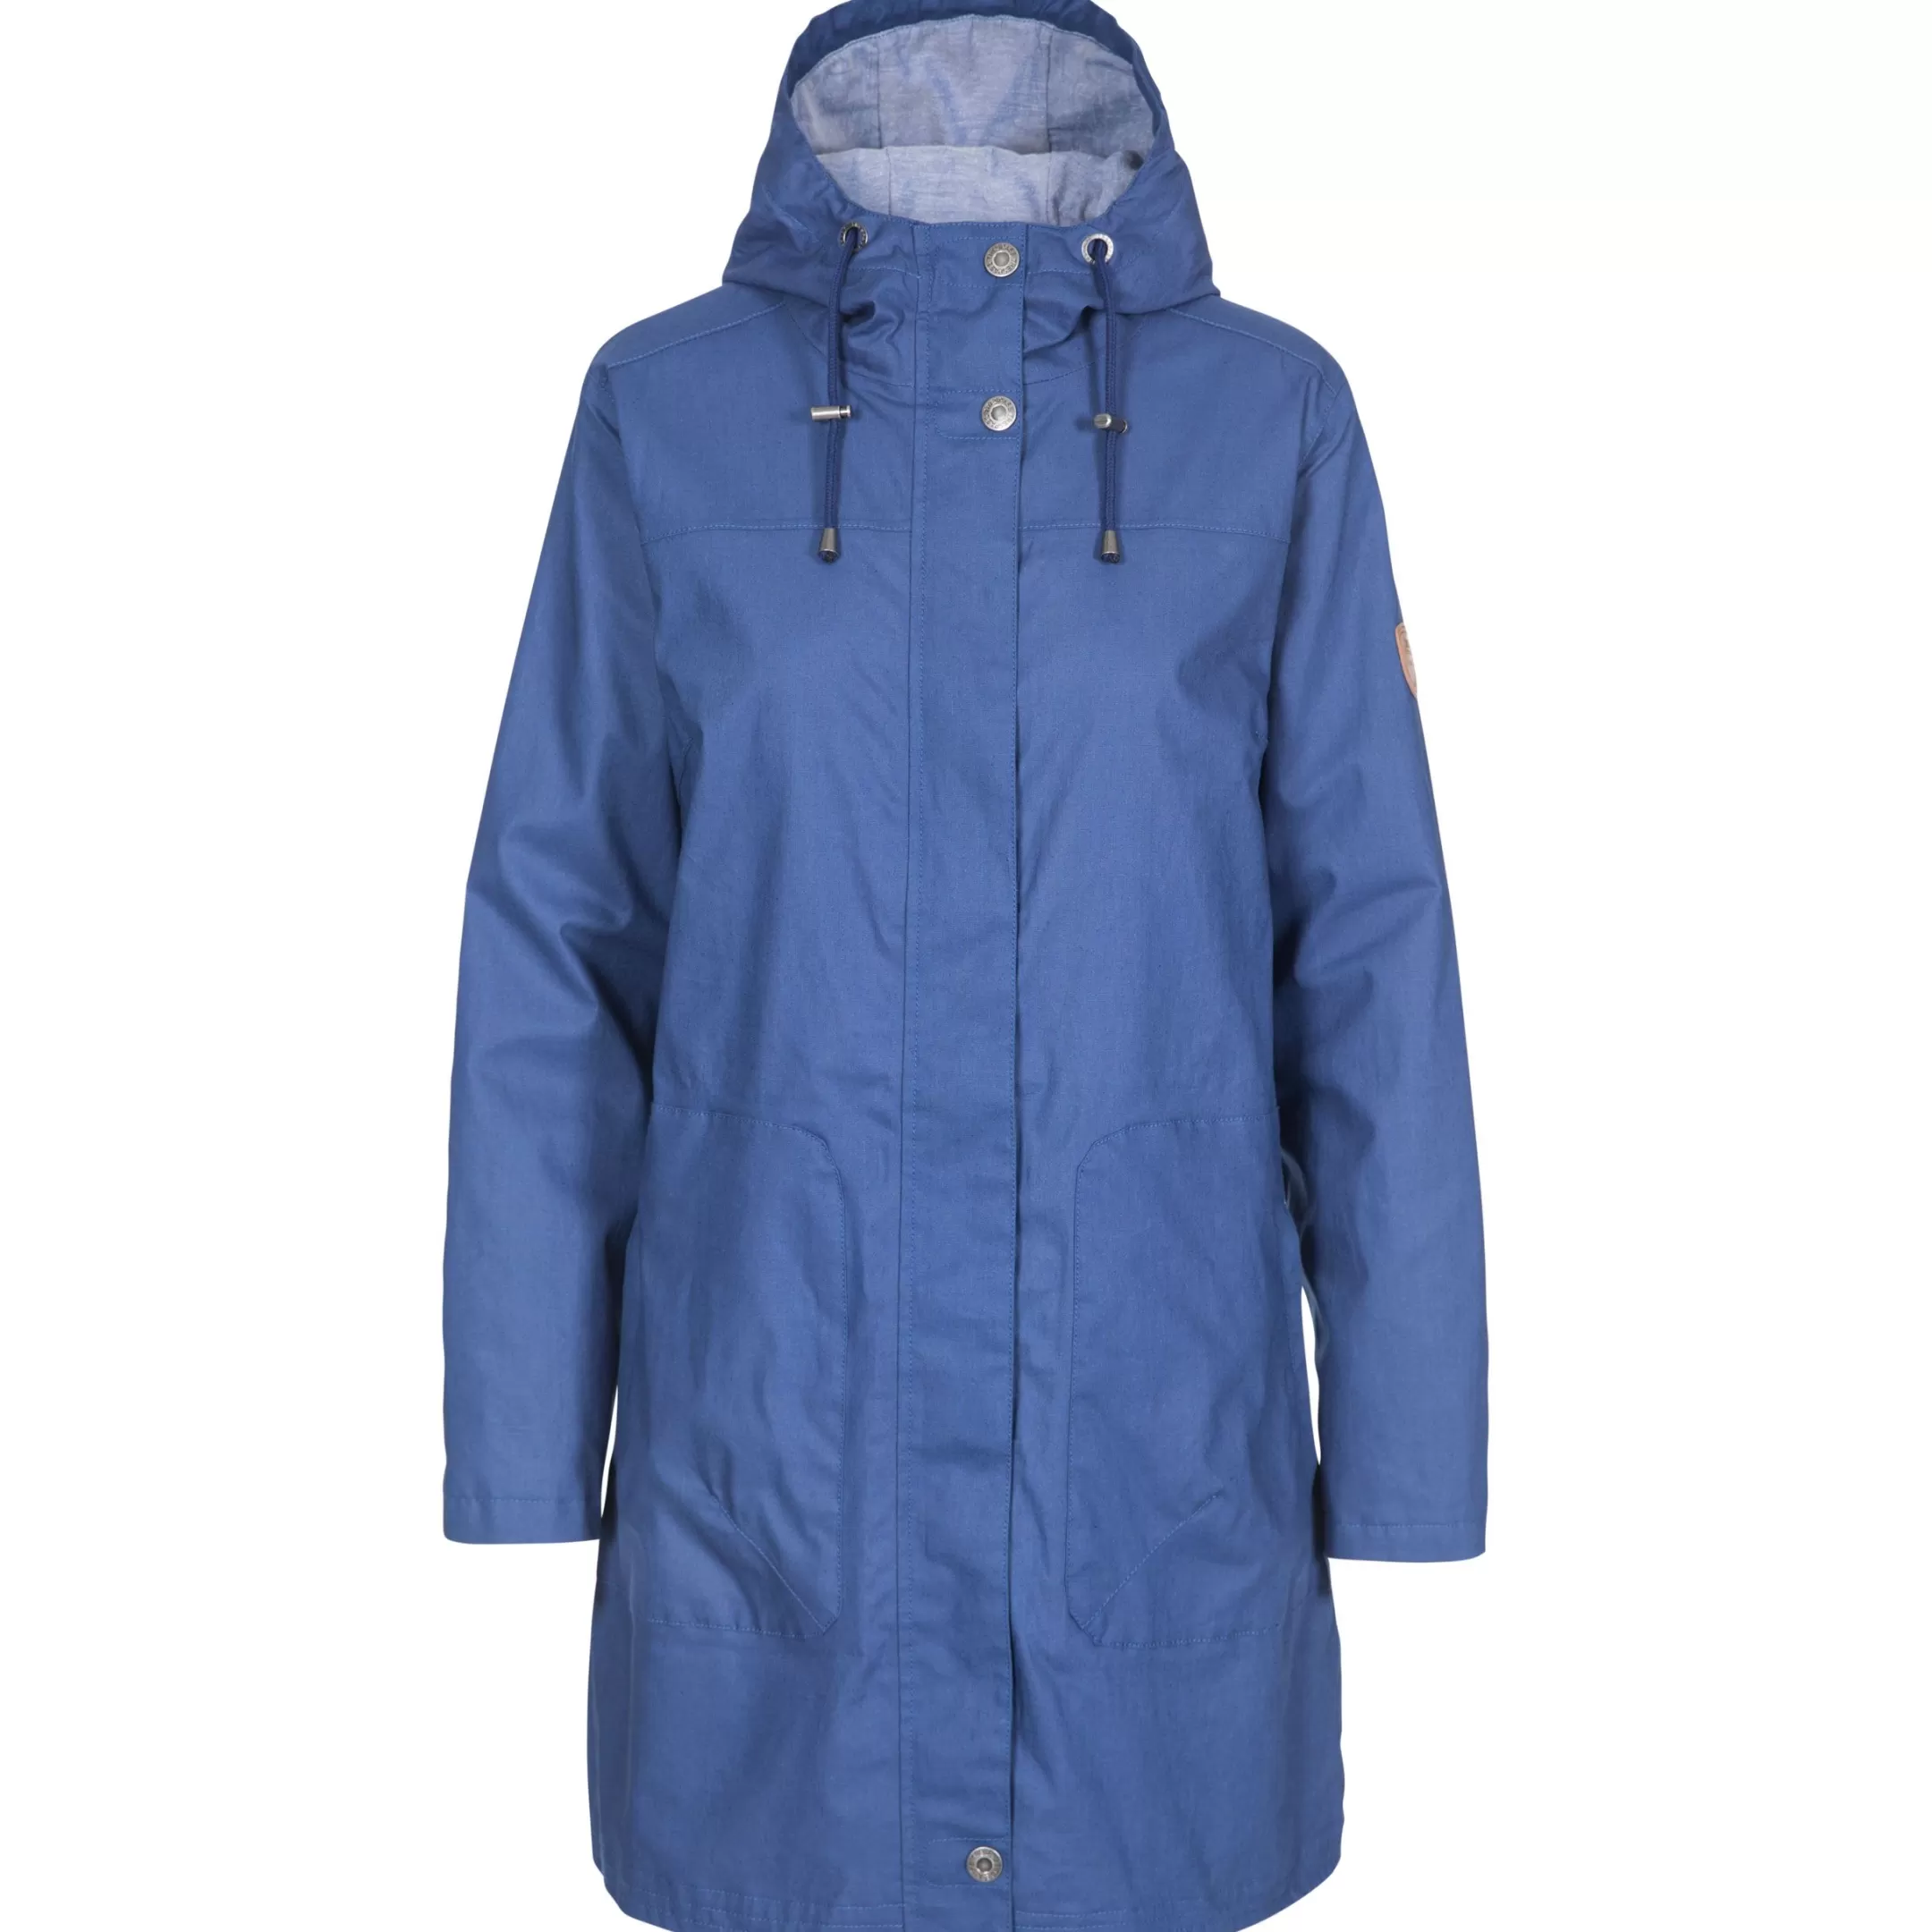 Womens Waterproof Jacket Sprinkled | Trespass Hot